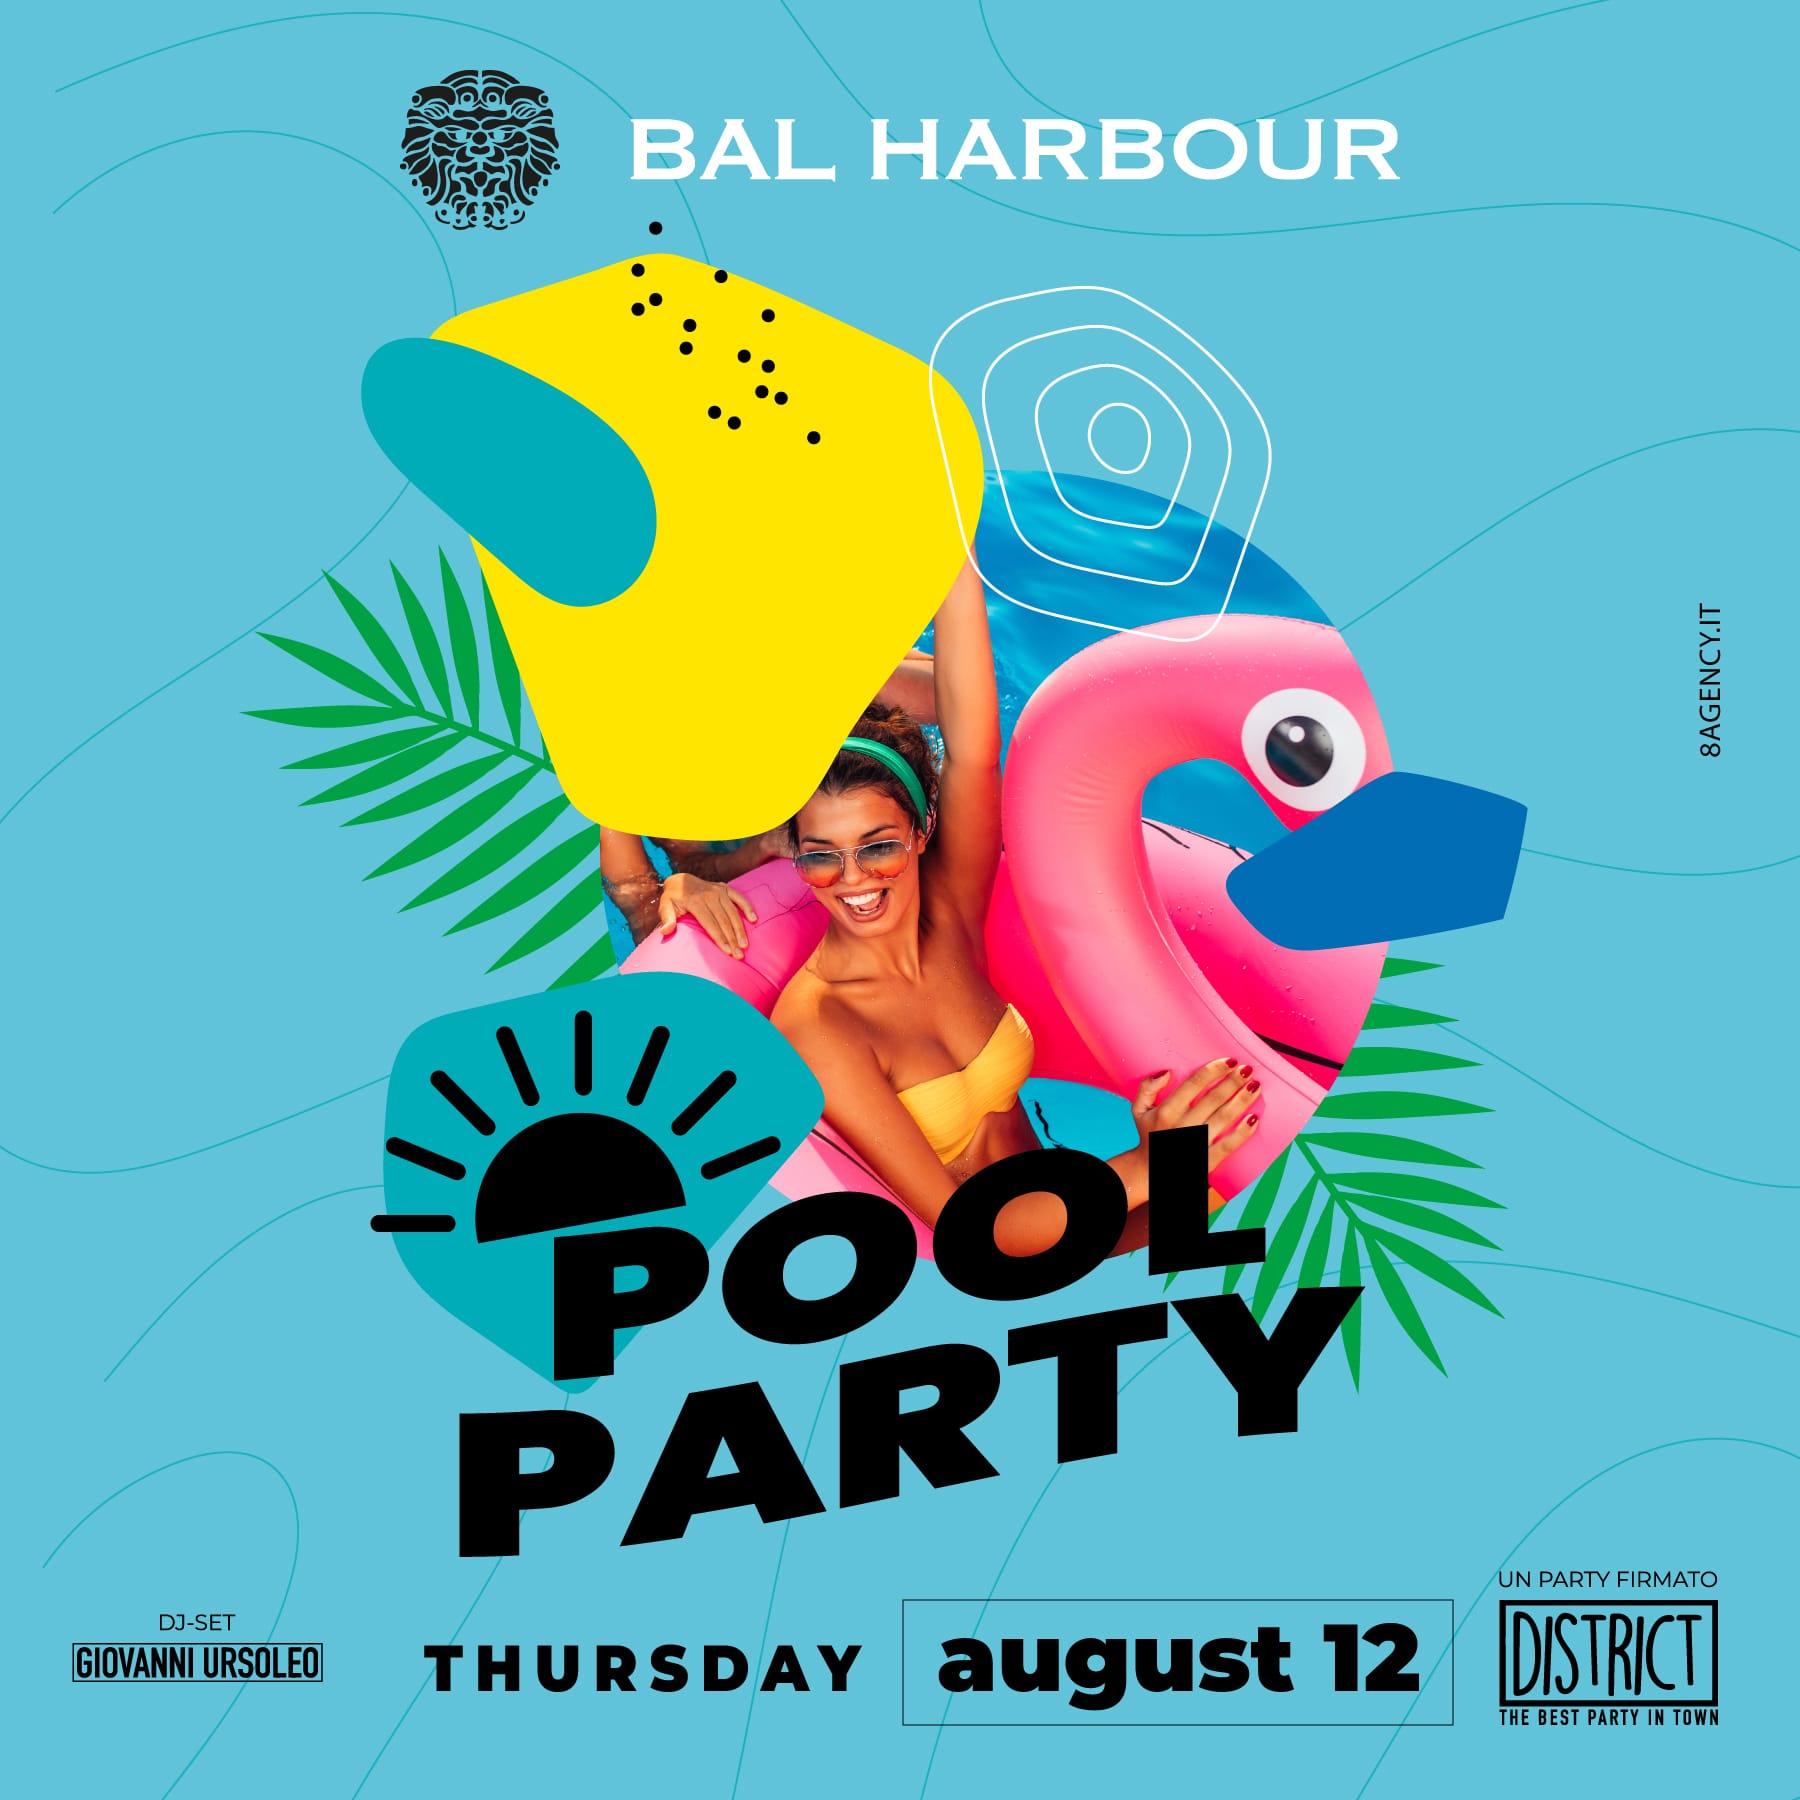 Pool Party in Piscina San Teodoro Giovedì 12 Agosto 2021 - Bal Harbour